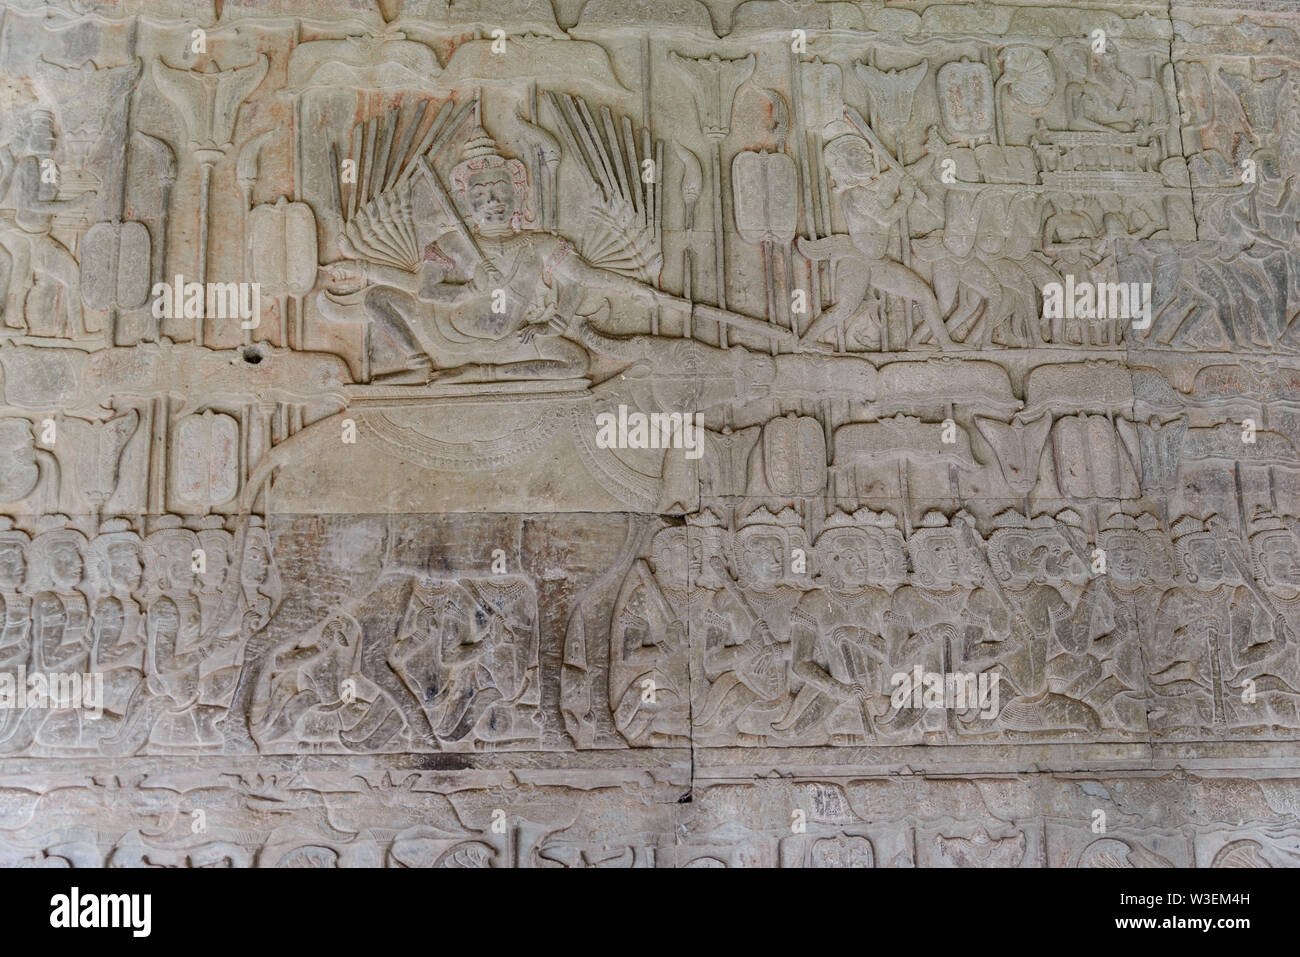 Berühmte bas Reflief in der Wand von Angkor Wat Tempel geschnitzt, Weltkulturerbe und die meisten touristische Website besucht, Kambodscha. Details, Nahaufnahme der epischen Schlachten Stockfoto